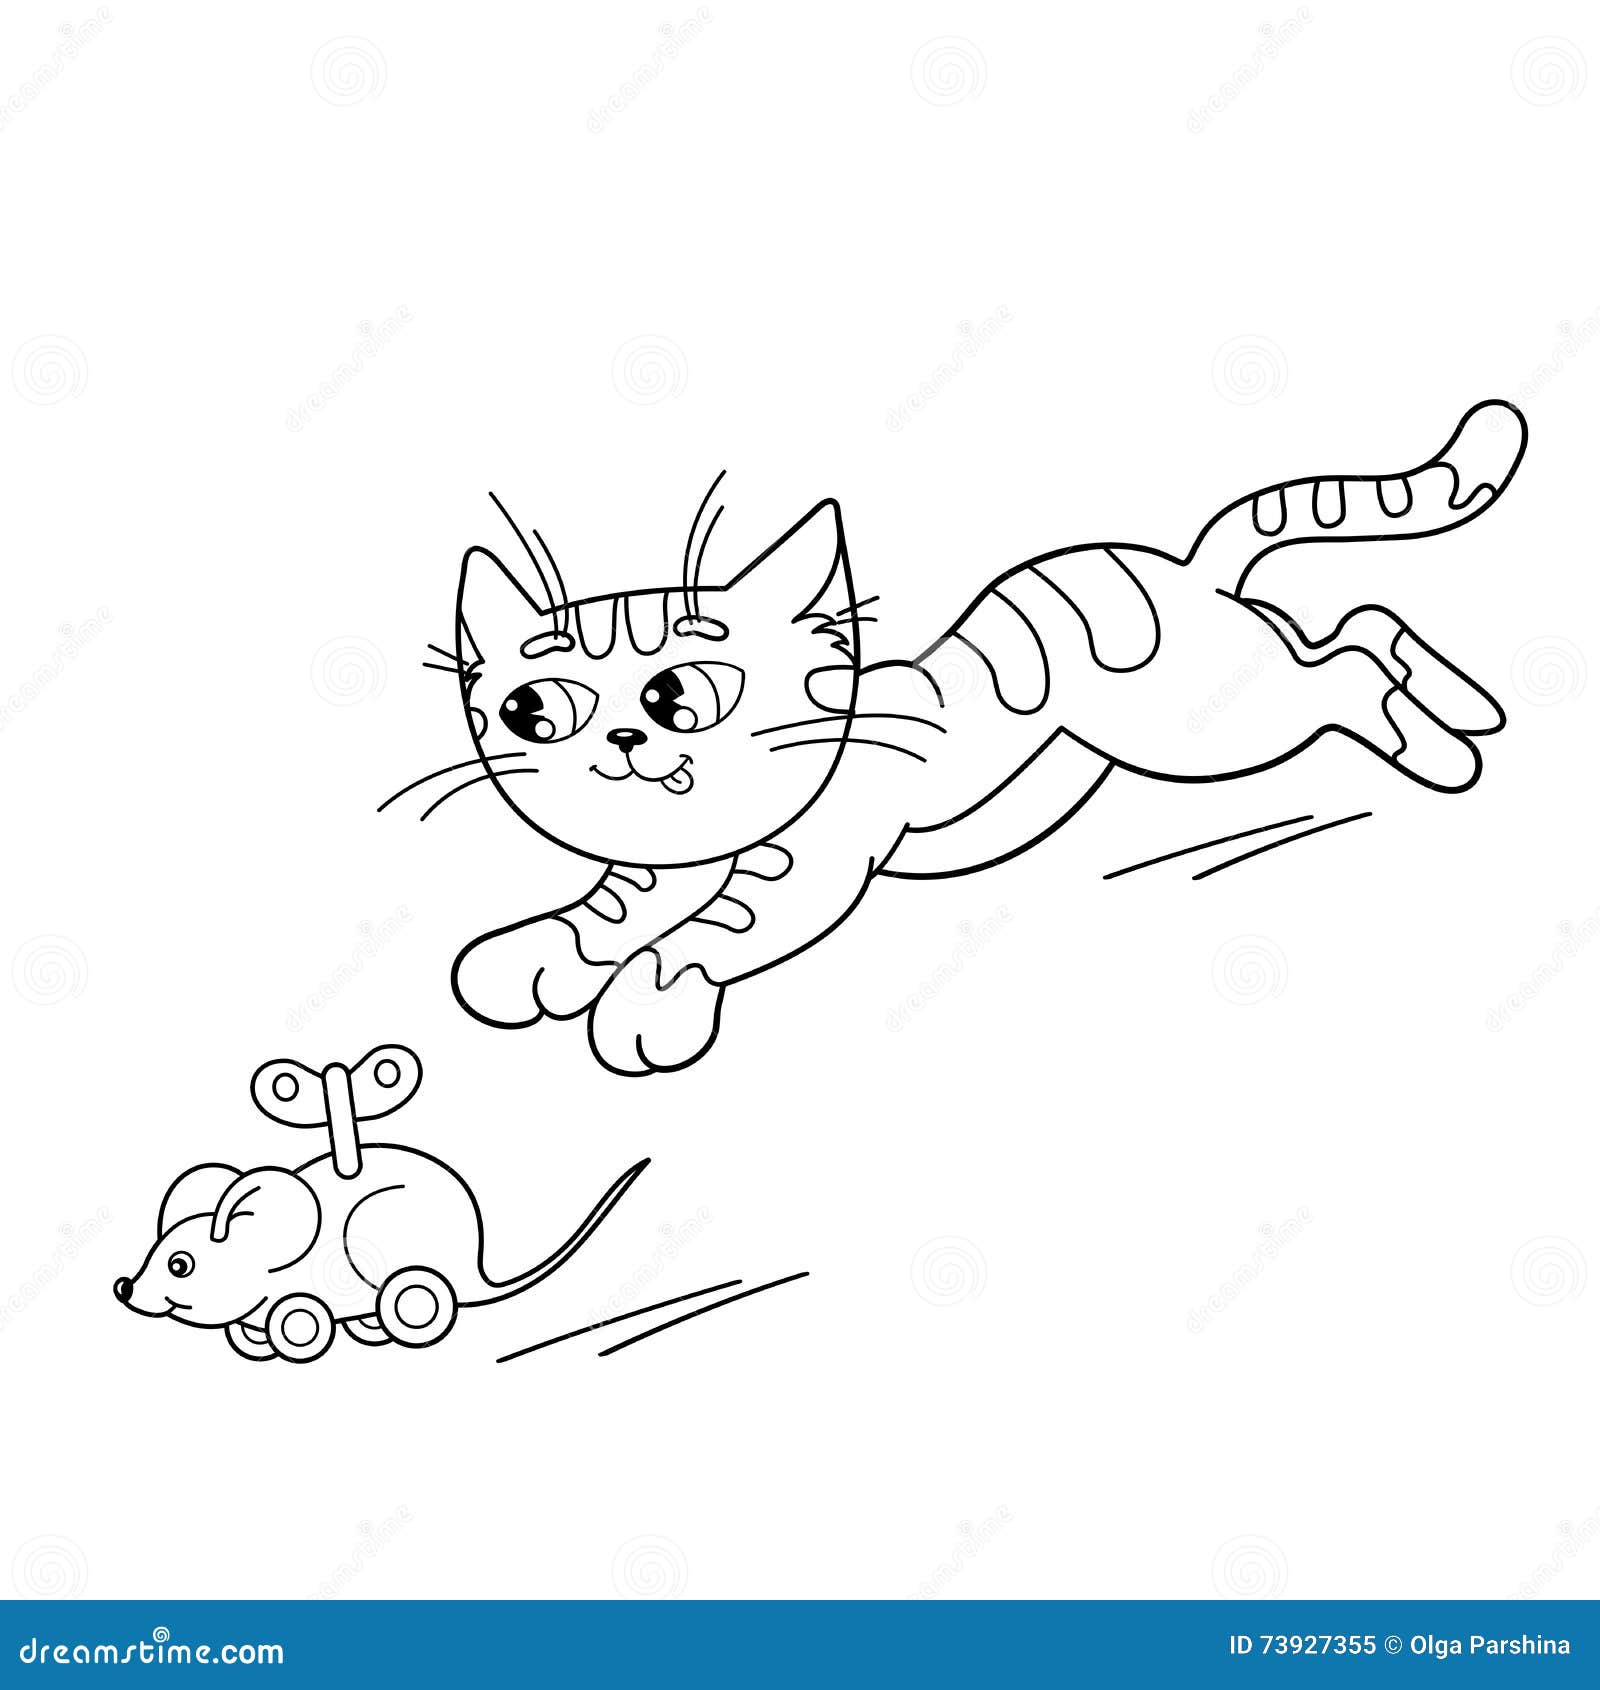 Desenhos para colorir de desenho de um gato com um rato para